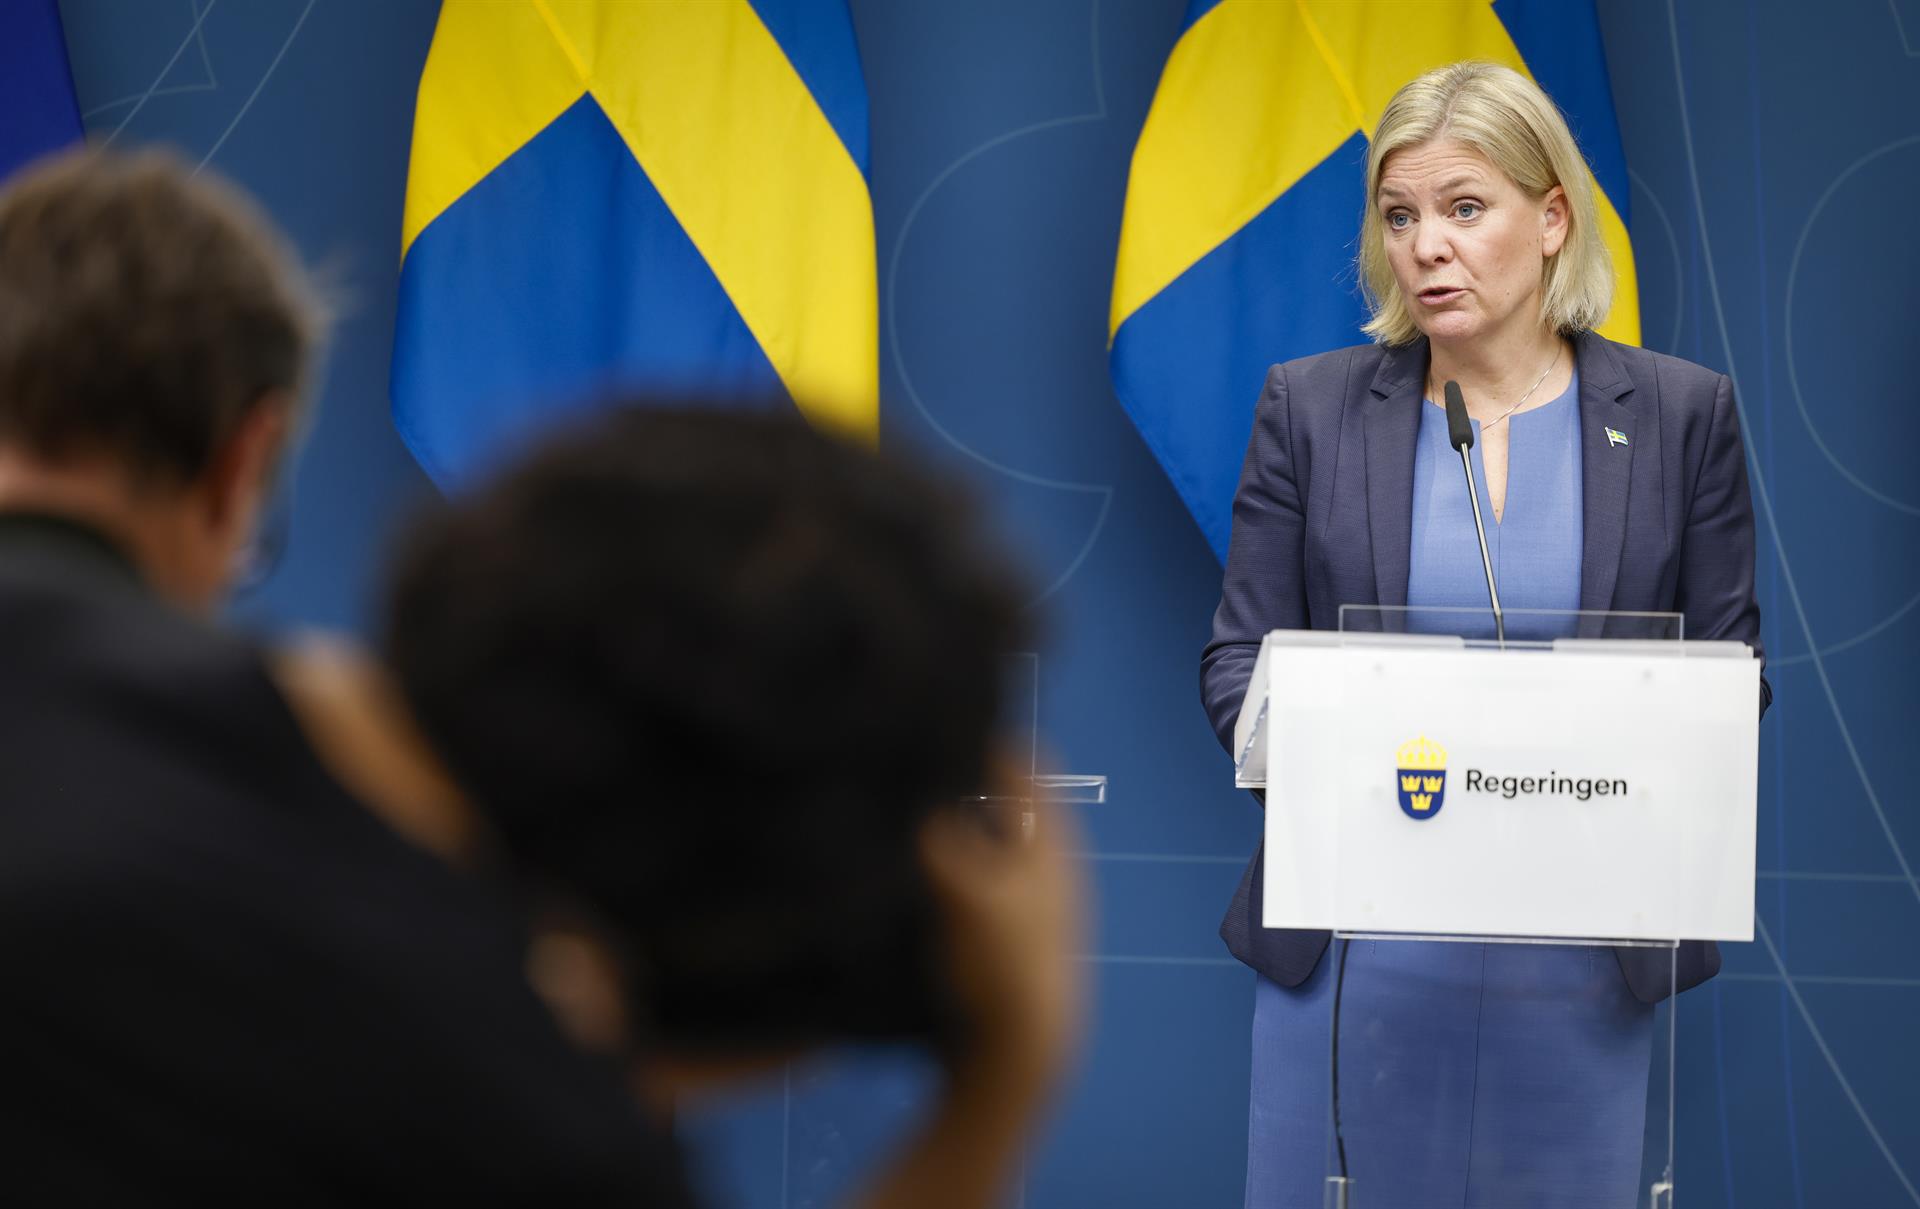 Dimiteix la primera ministra socialdemòcrata de Suècia, després de la derrota